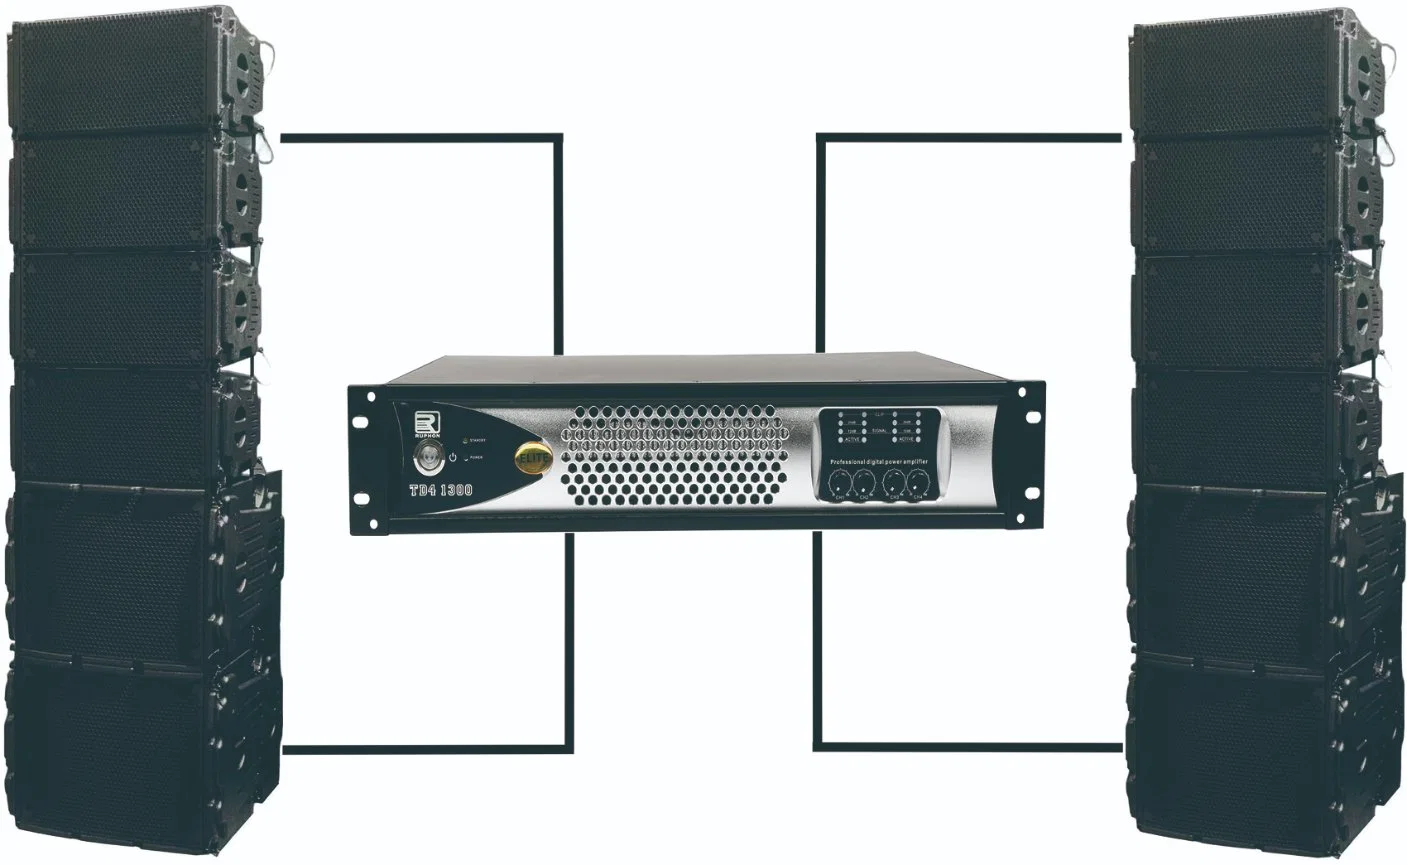 Amplificador de potencia de clase D personalizado - amplificador de audio PRO 8000W (TD41300) perfecto para sistemas de sonido profesionales, altavoces PA y Touring Line Array